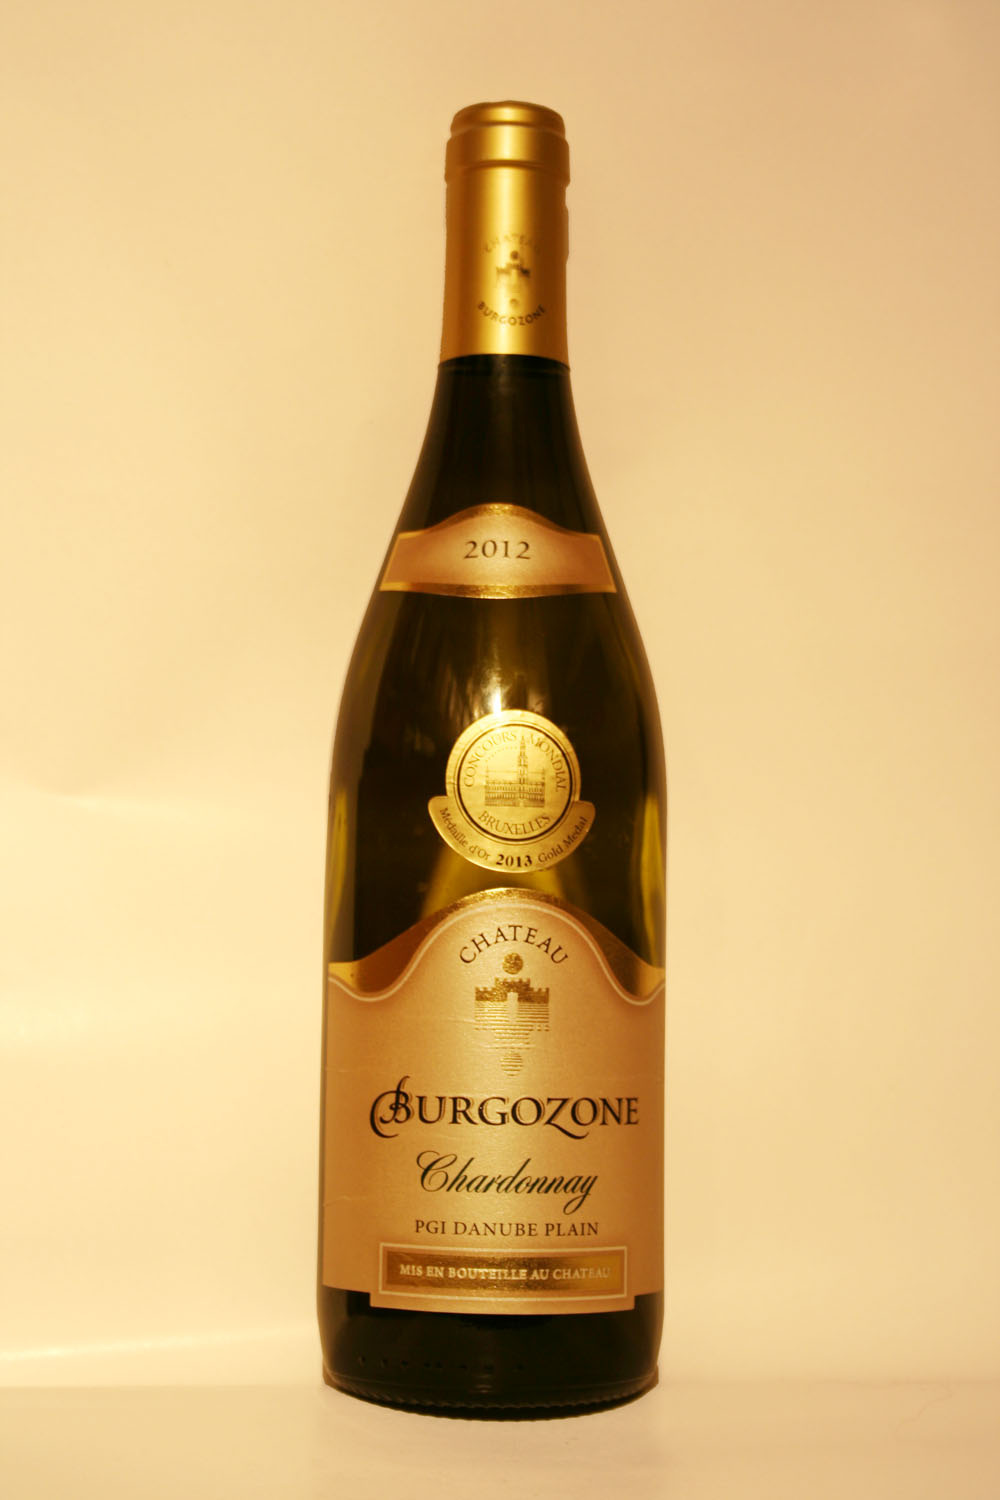 Chateau Burgozone Chardonnay 2012